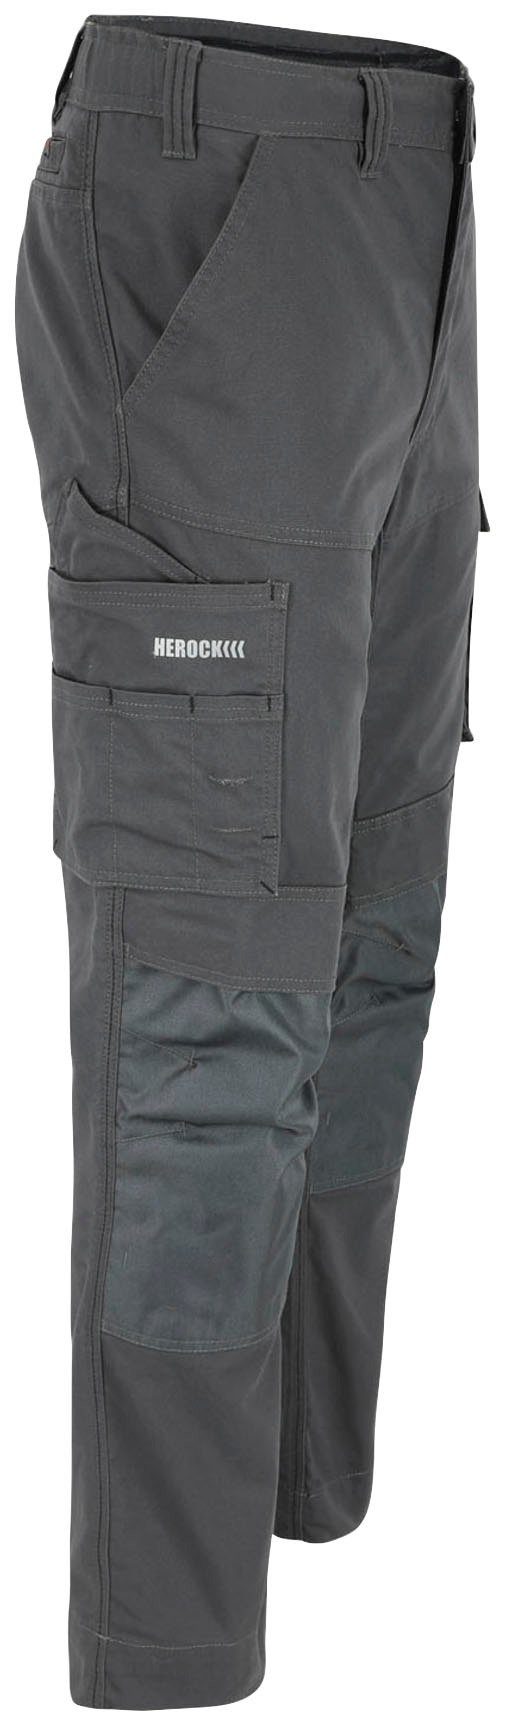 Herock Arbeitshose SOCRES Multi-pocket, wasserabweisend 2-Wege-Stretch, beschichtet, bequem grau